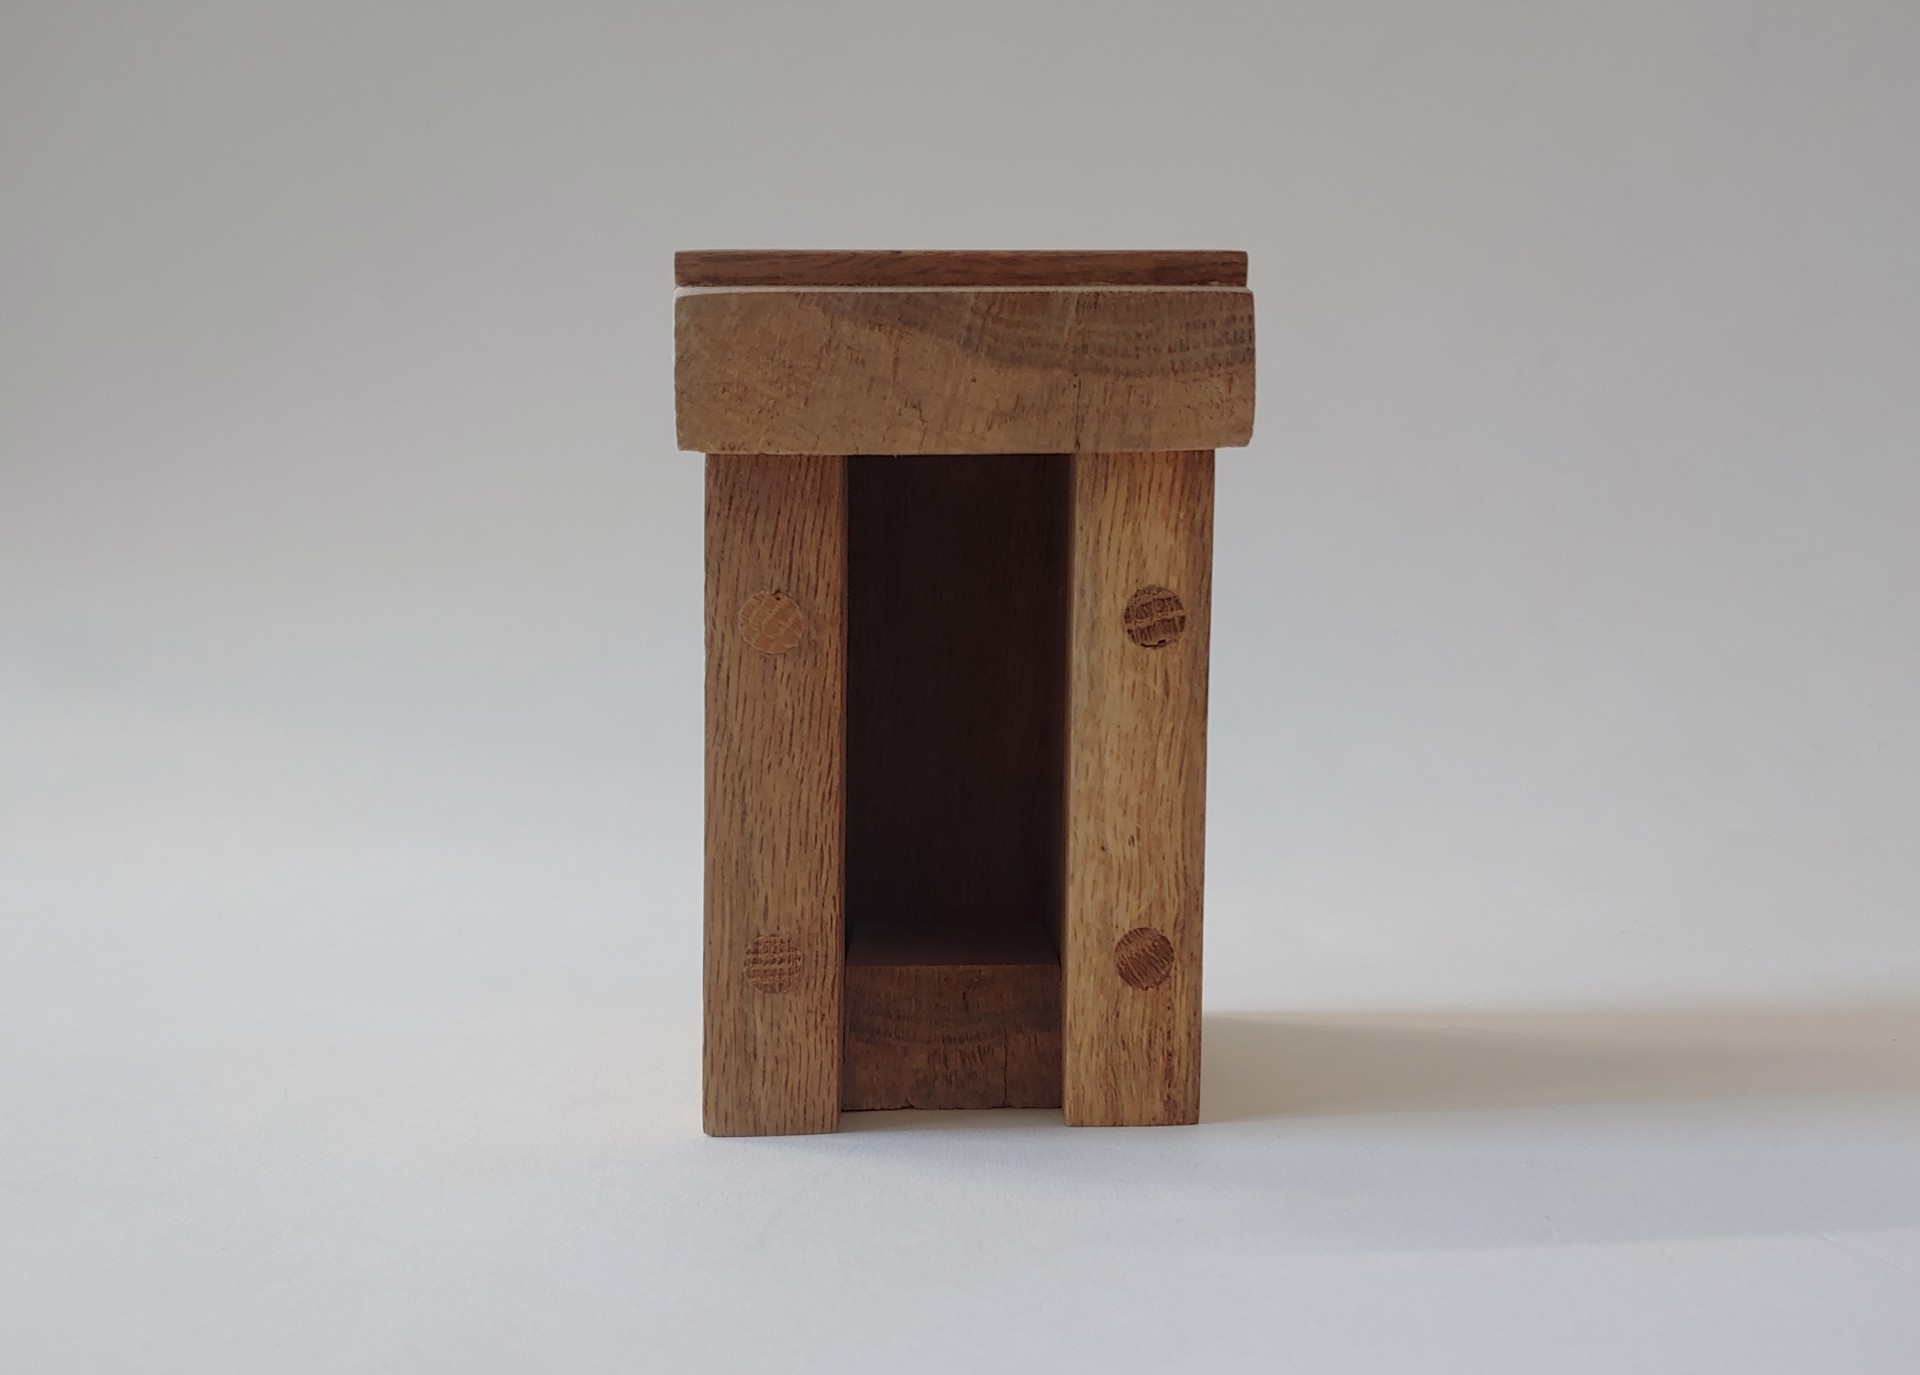 Model #6 - Furniture by David Amdur